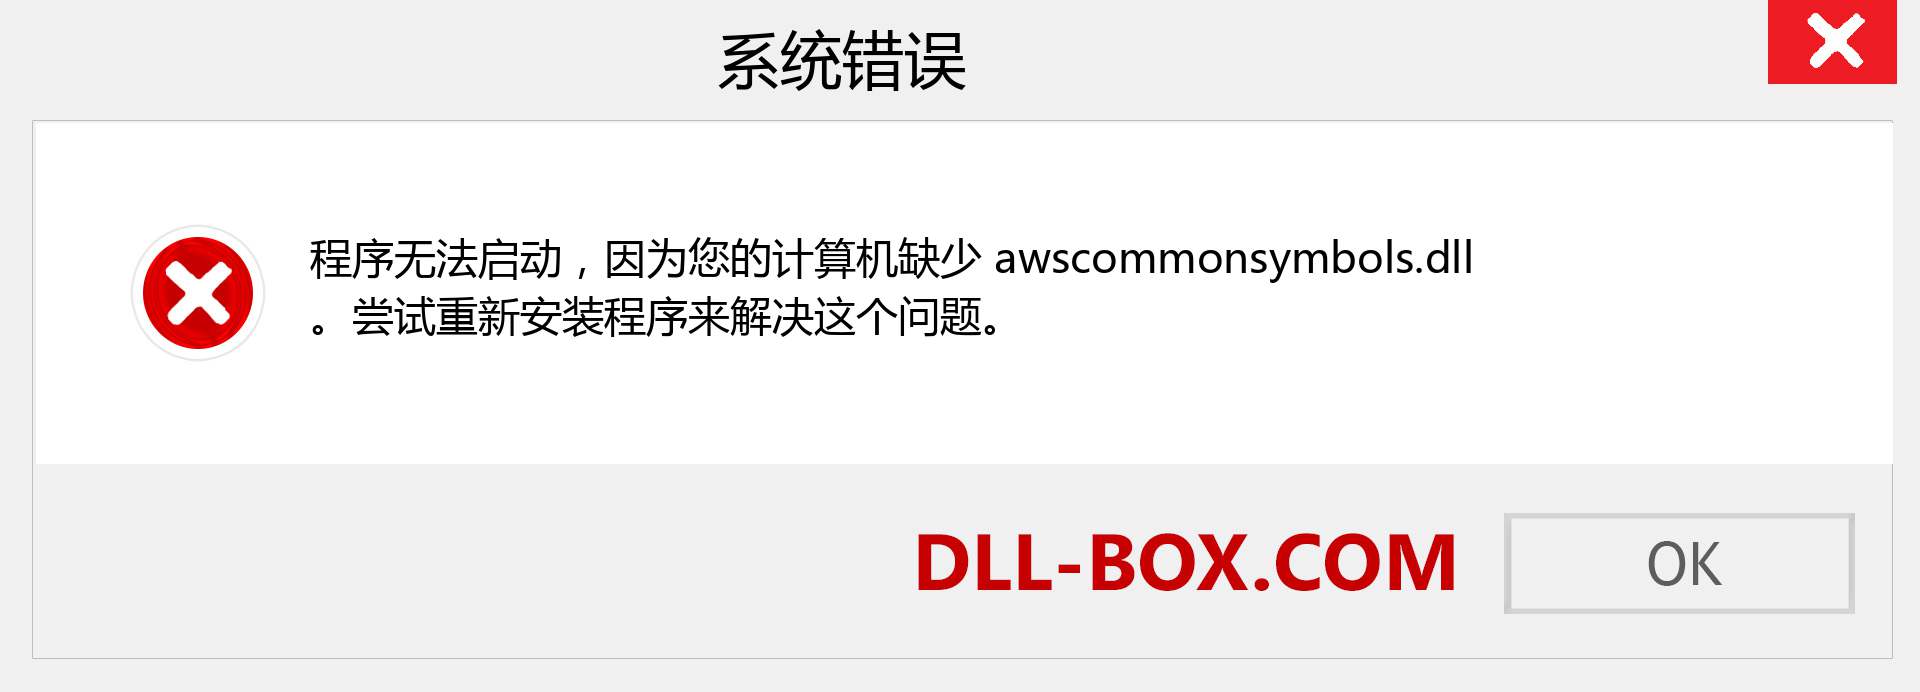 awscommonsymbols.dll 文件丢失？。 适用于 Windows 7、8、10 的下载 - 修复 Windows、照片、图像上的 awscommonsymbols dll 丢失错误